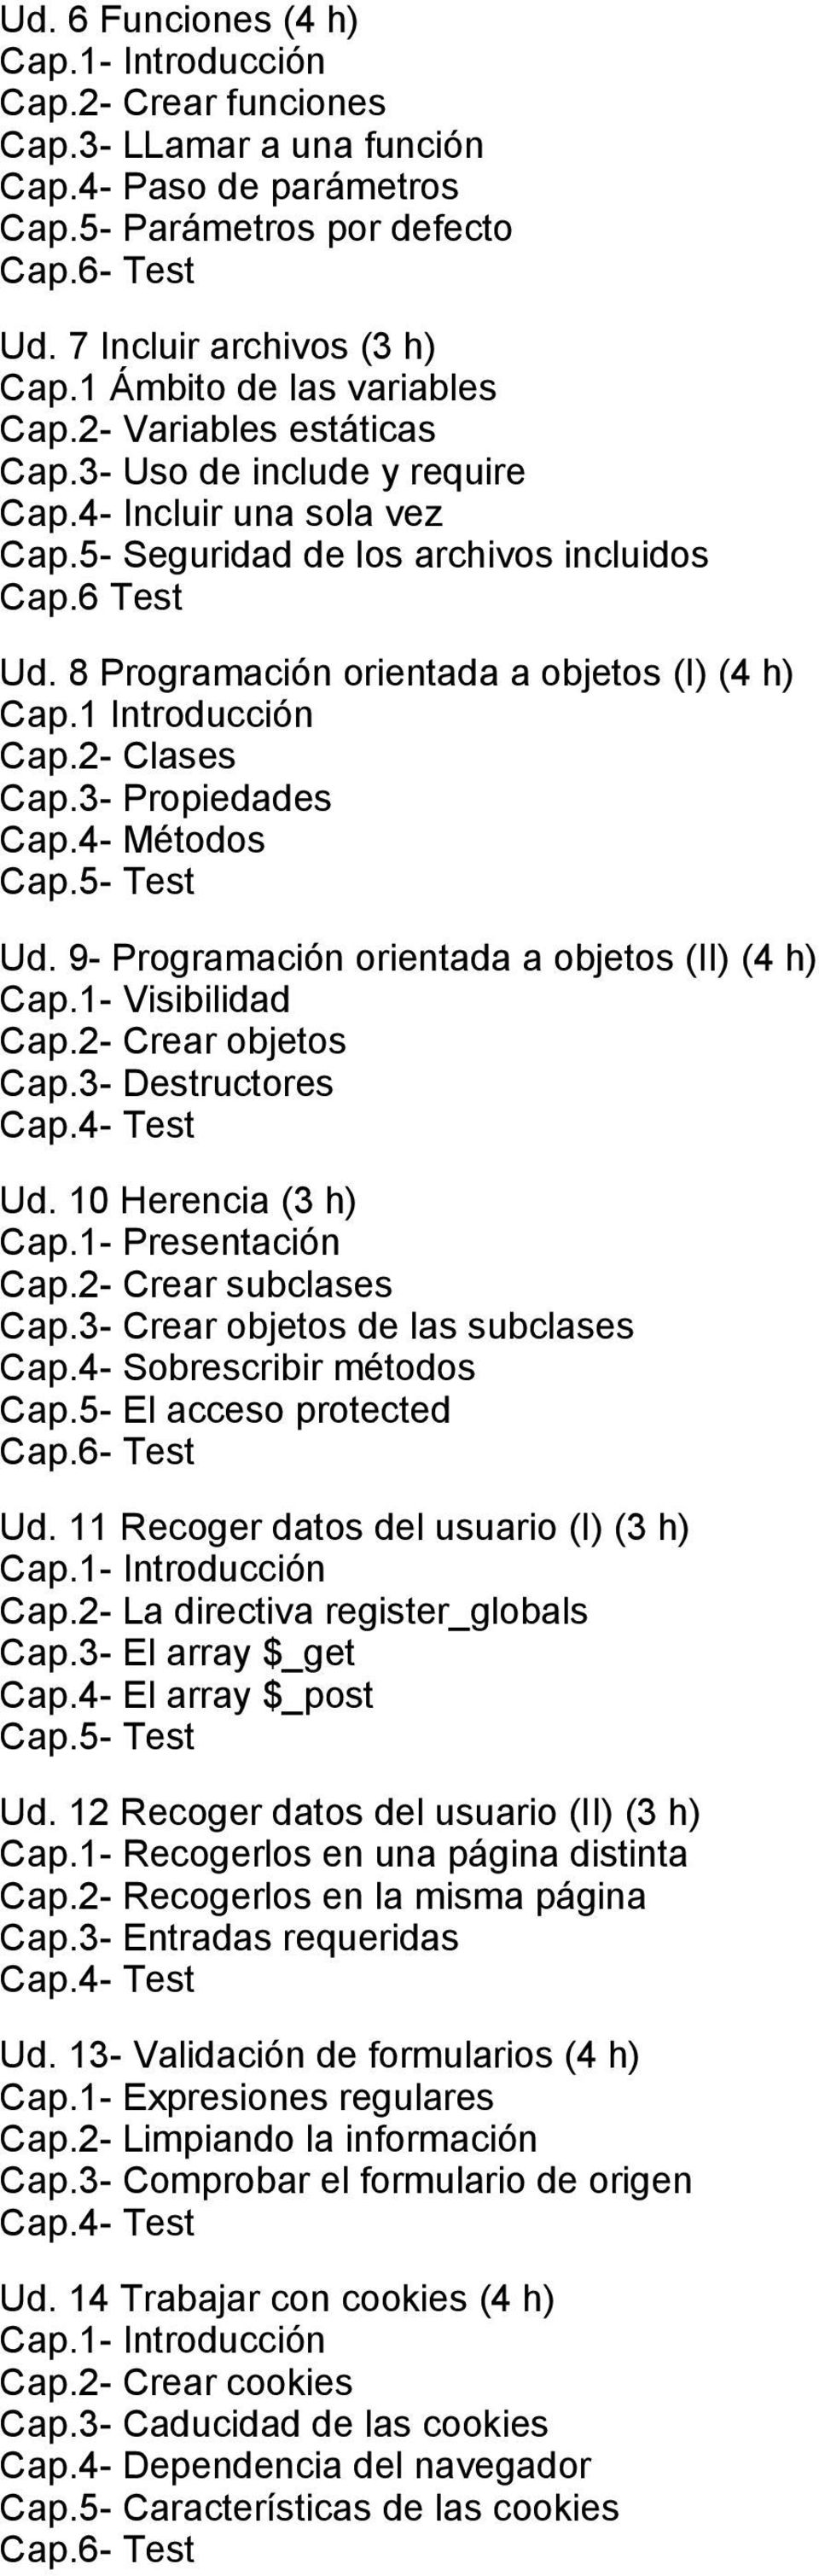 1 Introducción Cap.2 Clases Cap.3 Propiedades Cap.4 Métodos Ud. 9 Programación orientada a objetos (II) (4 h) Cap.1 Visibilidad Cap.2 Crear objetos Cap.3 Destructores Ud. 10 Herencia (3 h) Cap.